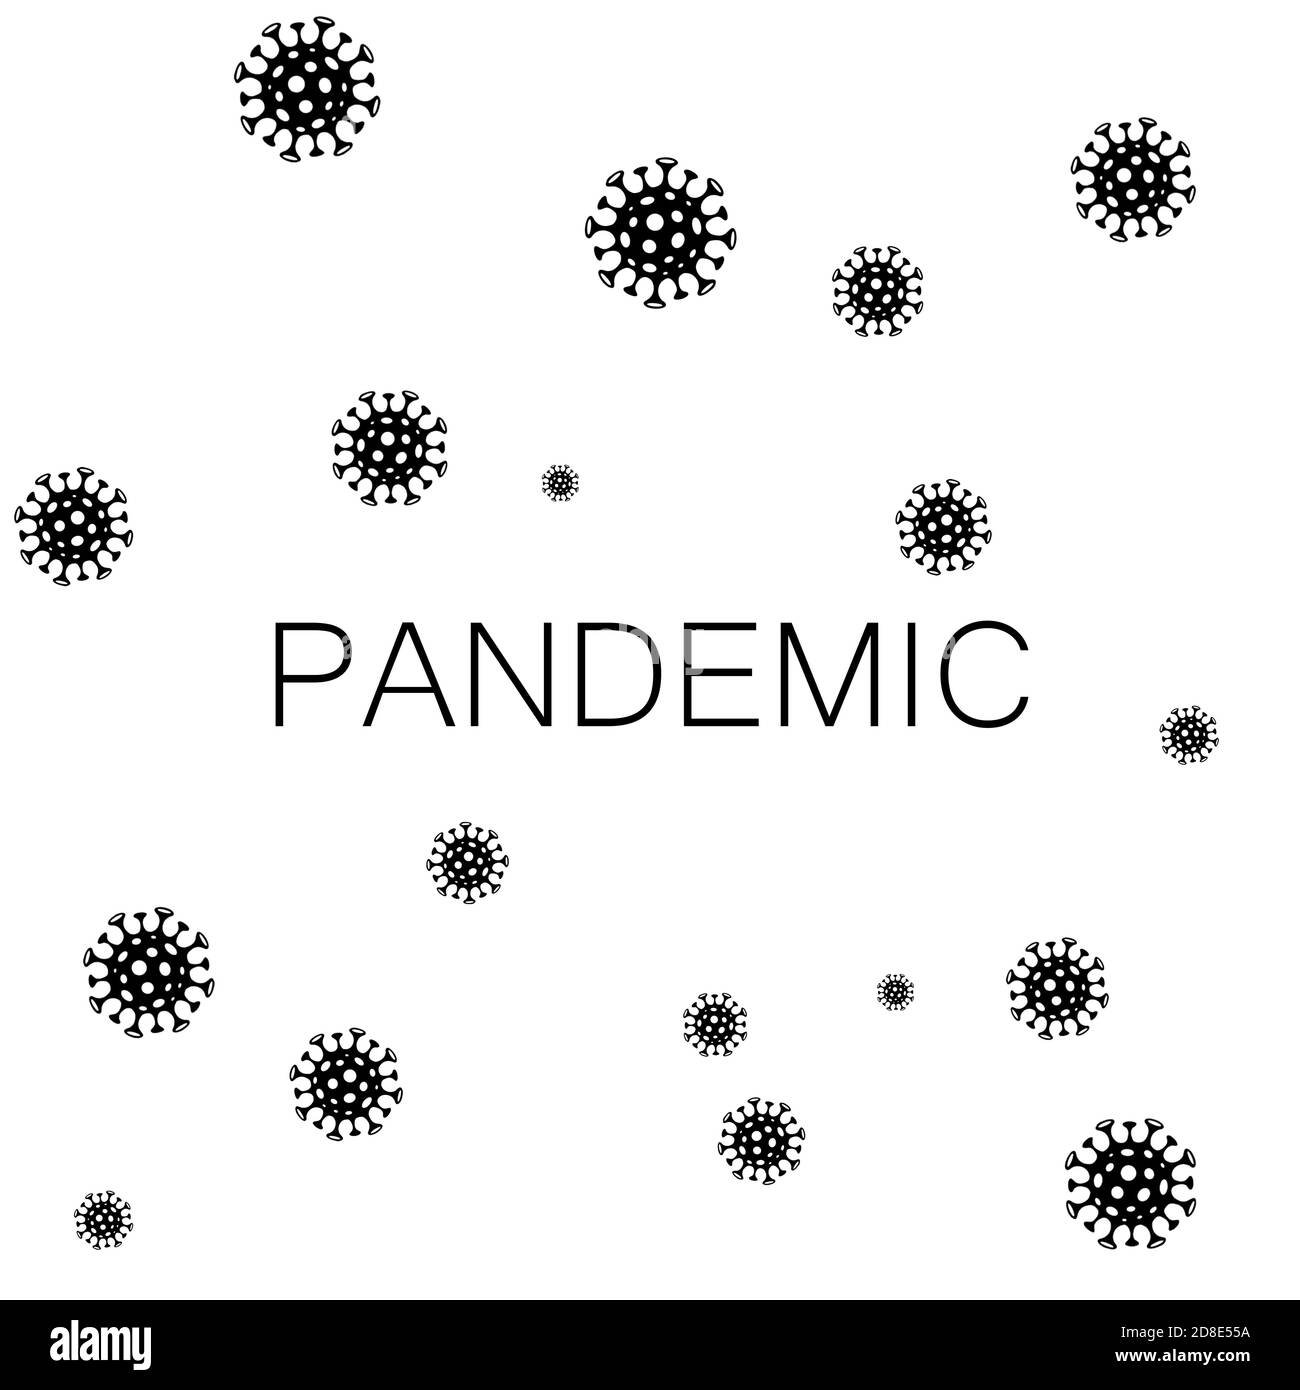 Pandemic , Coronavirus covid 19 Stock Photo